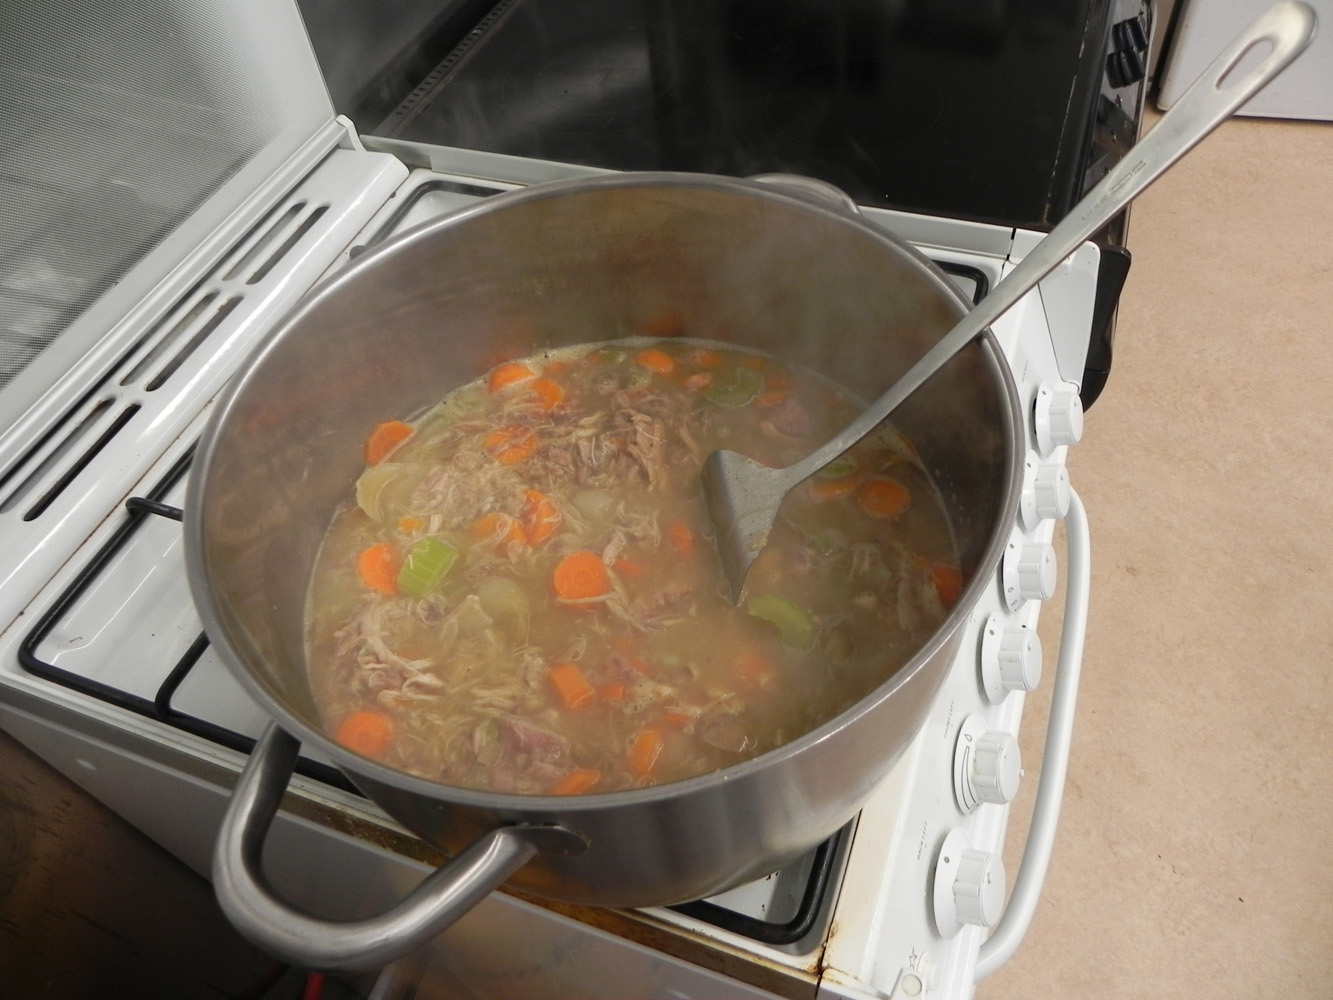 Rabbit soup in a kettle